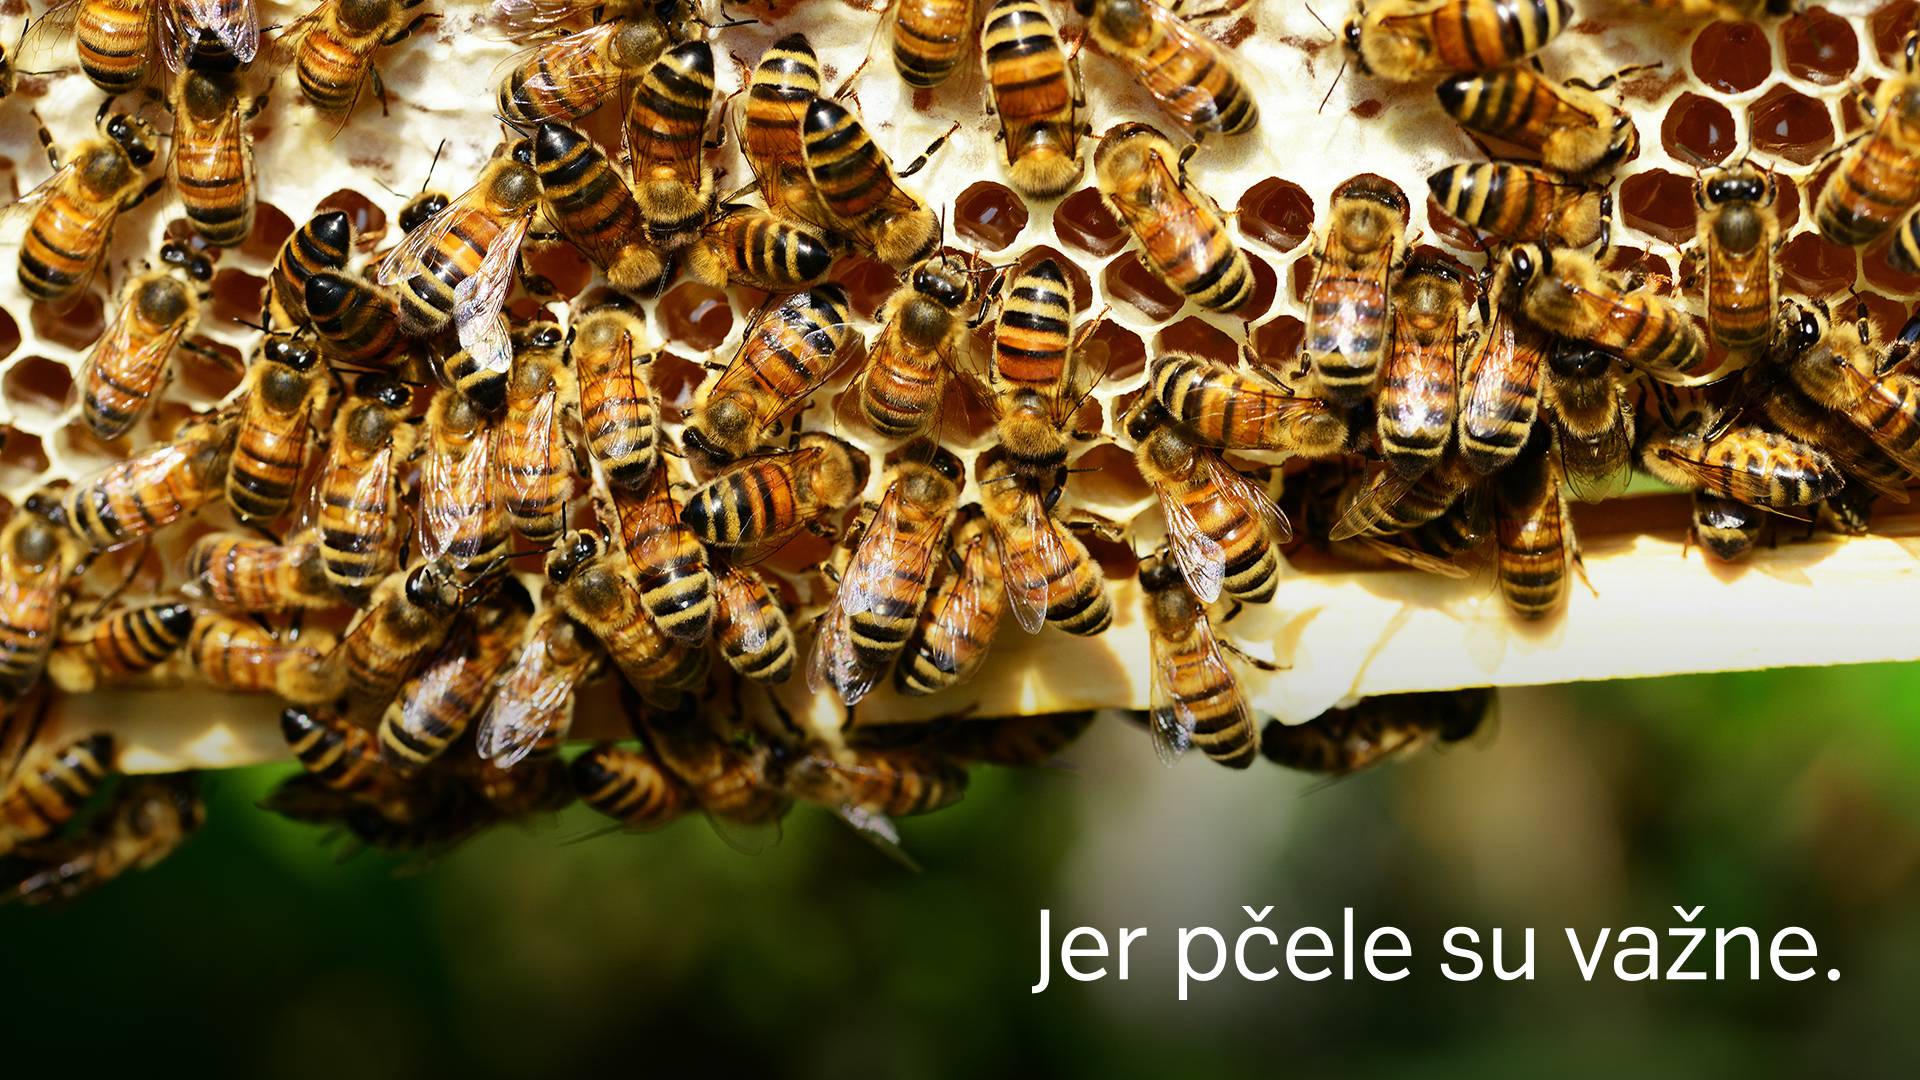 Spasioci pčela kreću u akciju i trebaju vašu pomoć!